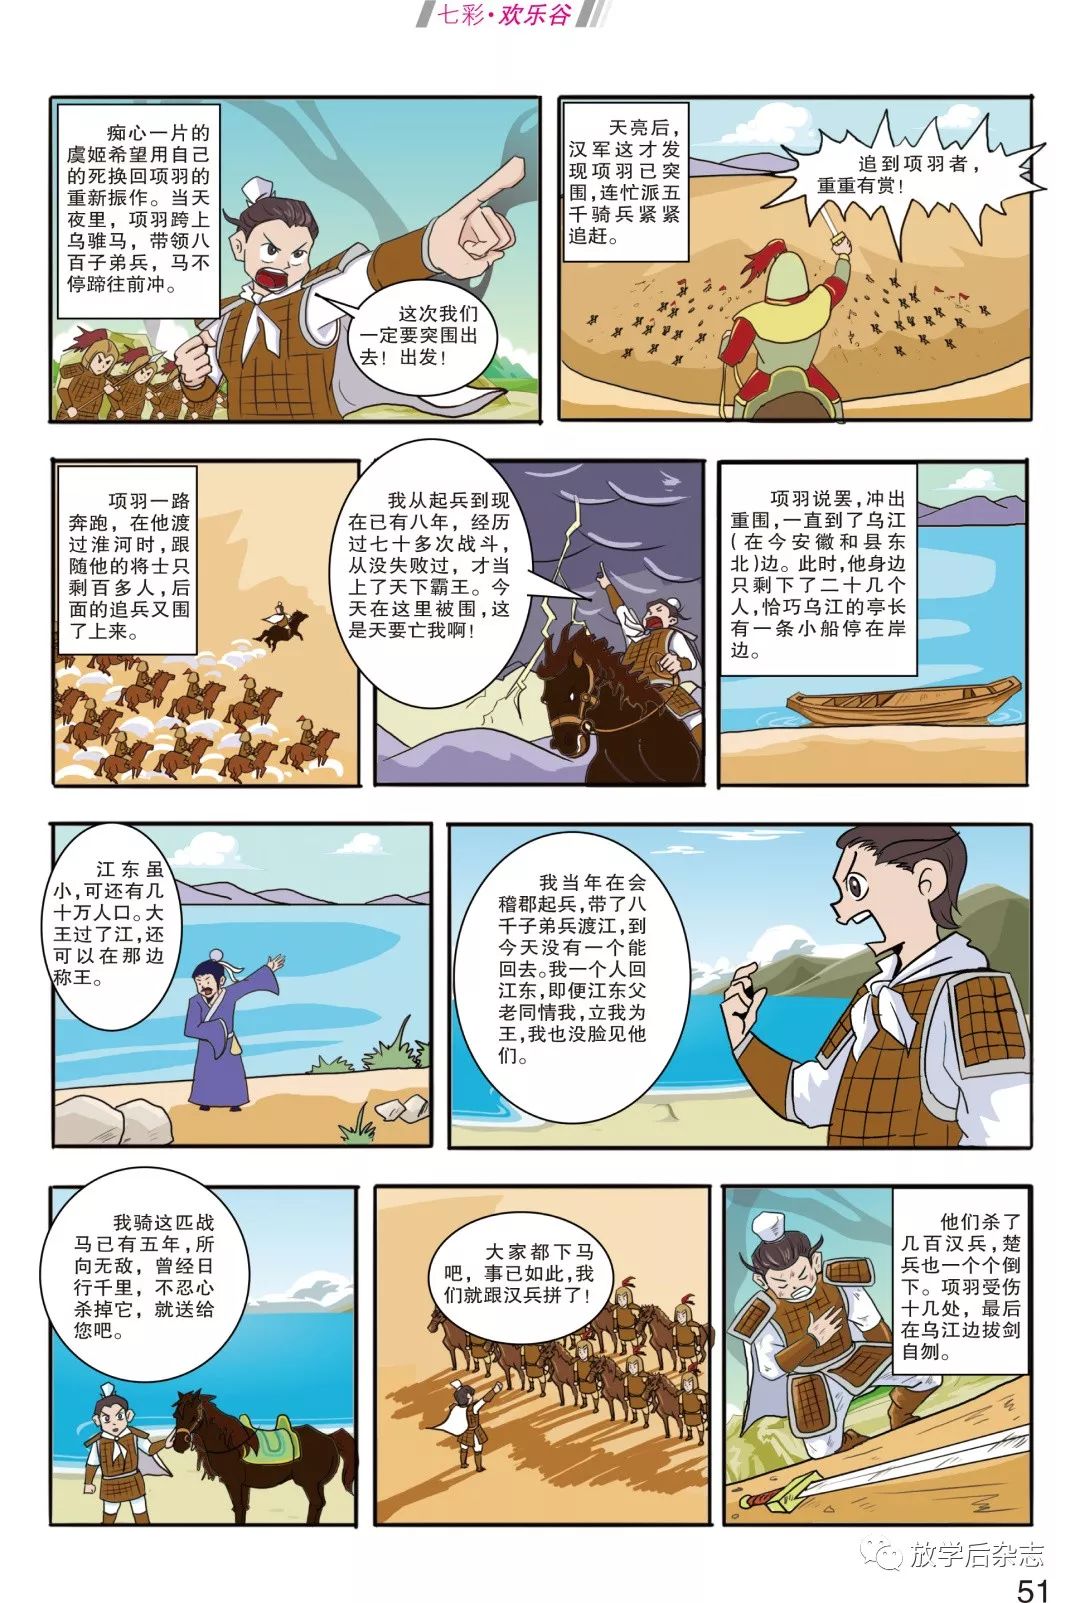 【欢乐谷】漫画中国历史之四面楚歌